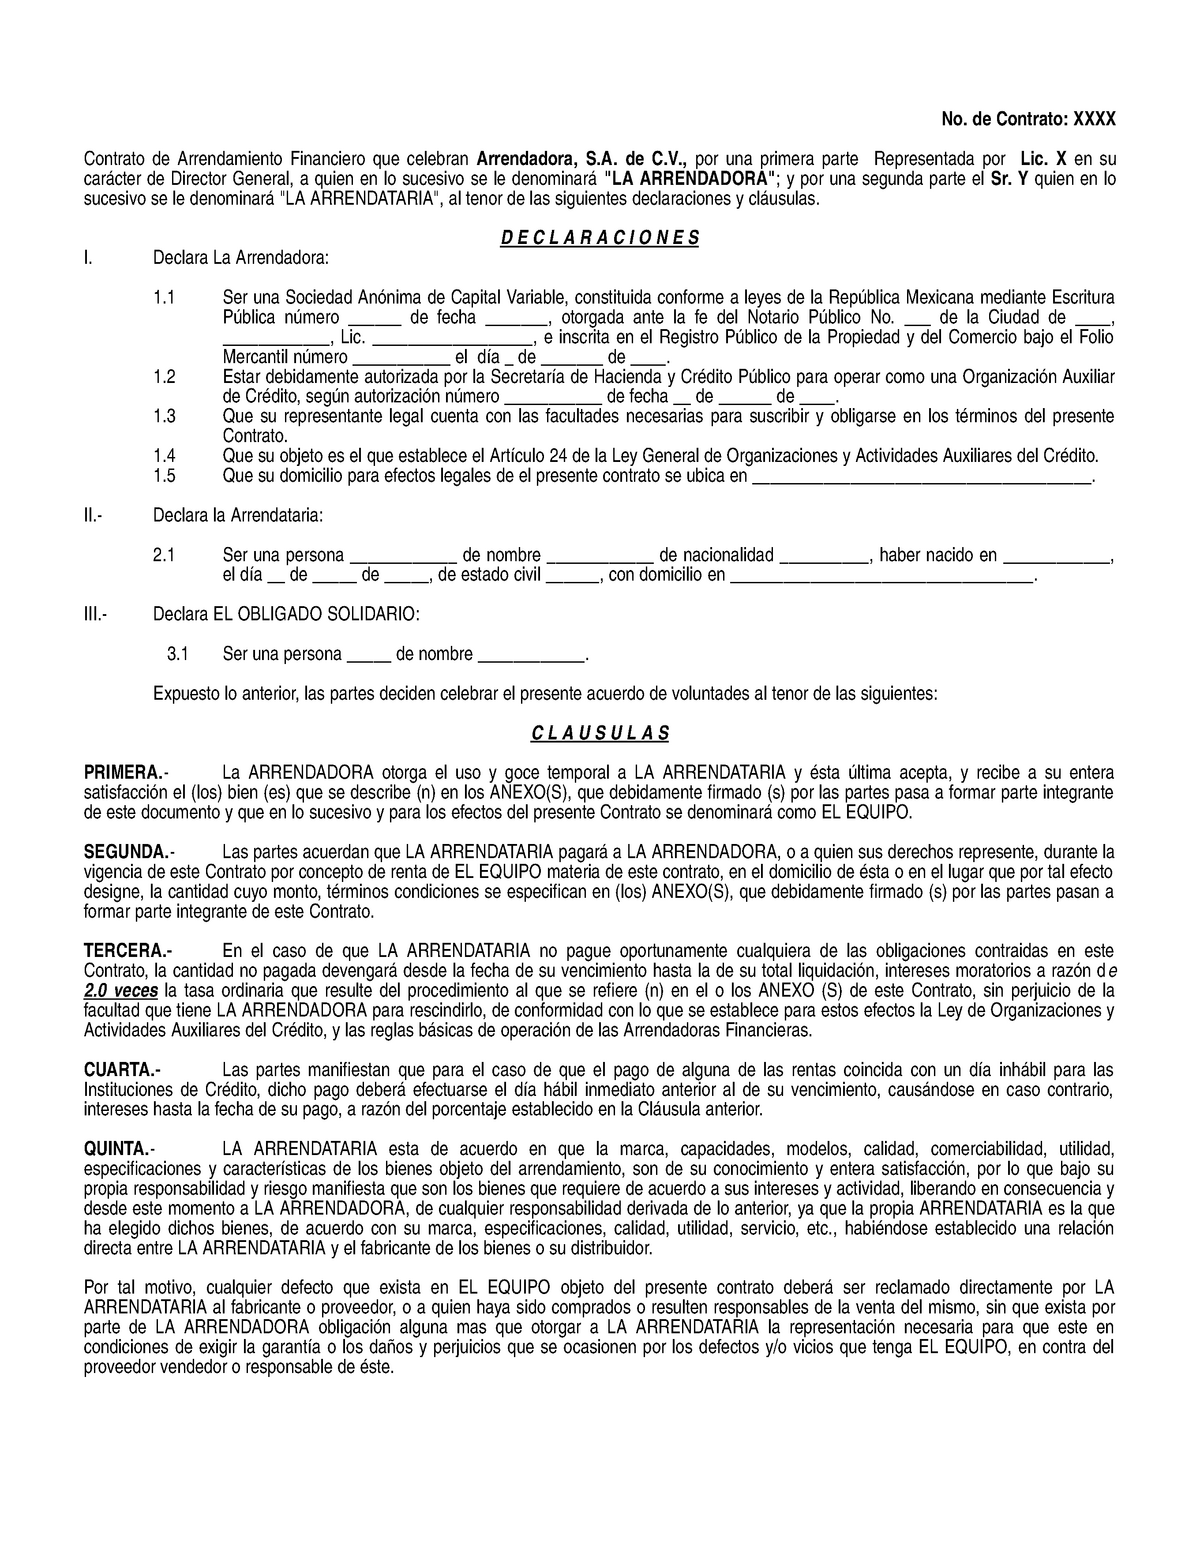 Contrato De Arrendamiento Financiero No De Contrato Xxxx Contrato De Arrendamiento 3088